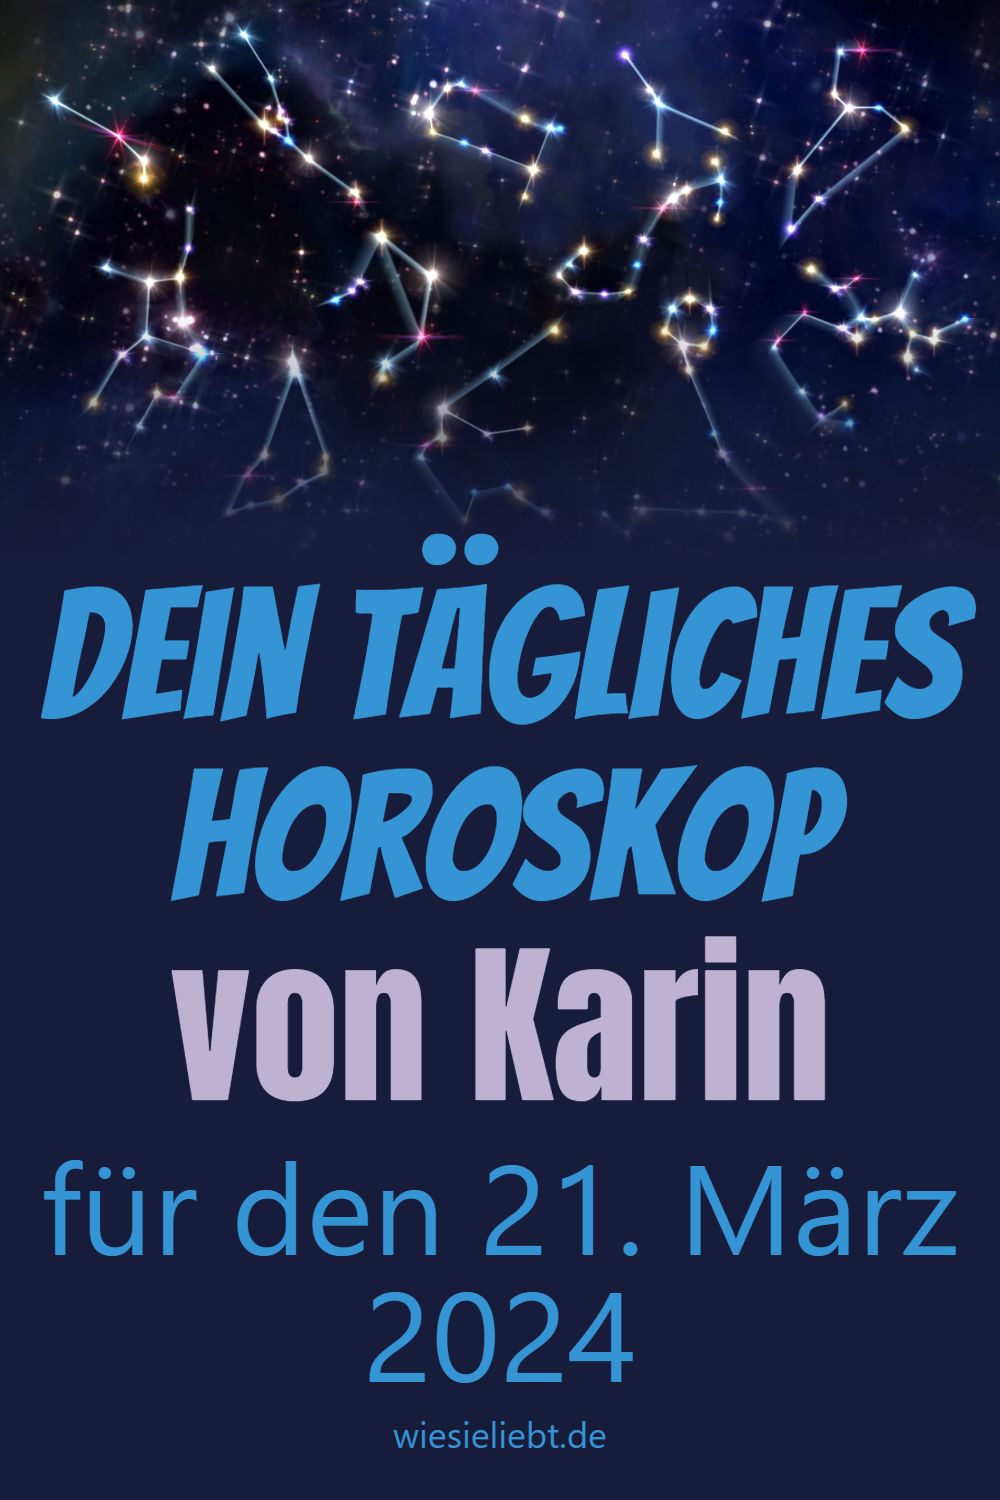 Dein tägliches Horoskop von Karin für den 21. März 2024